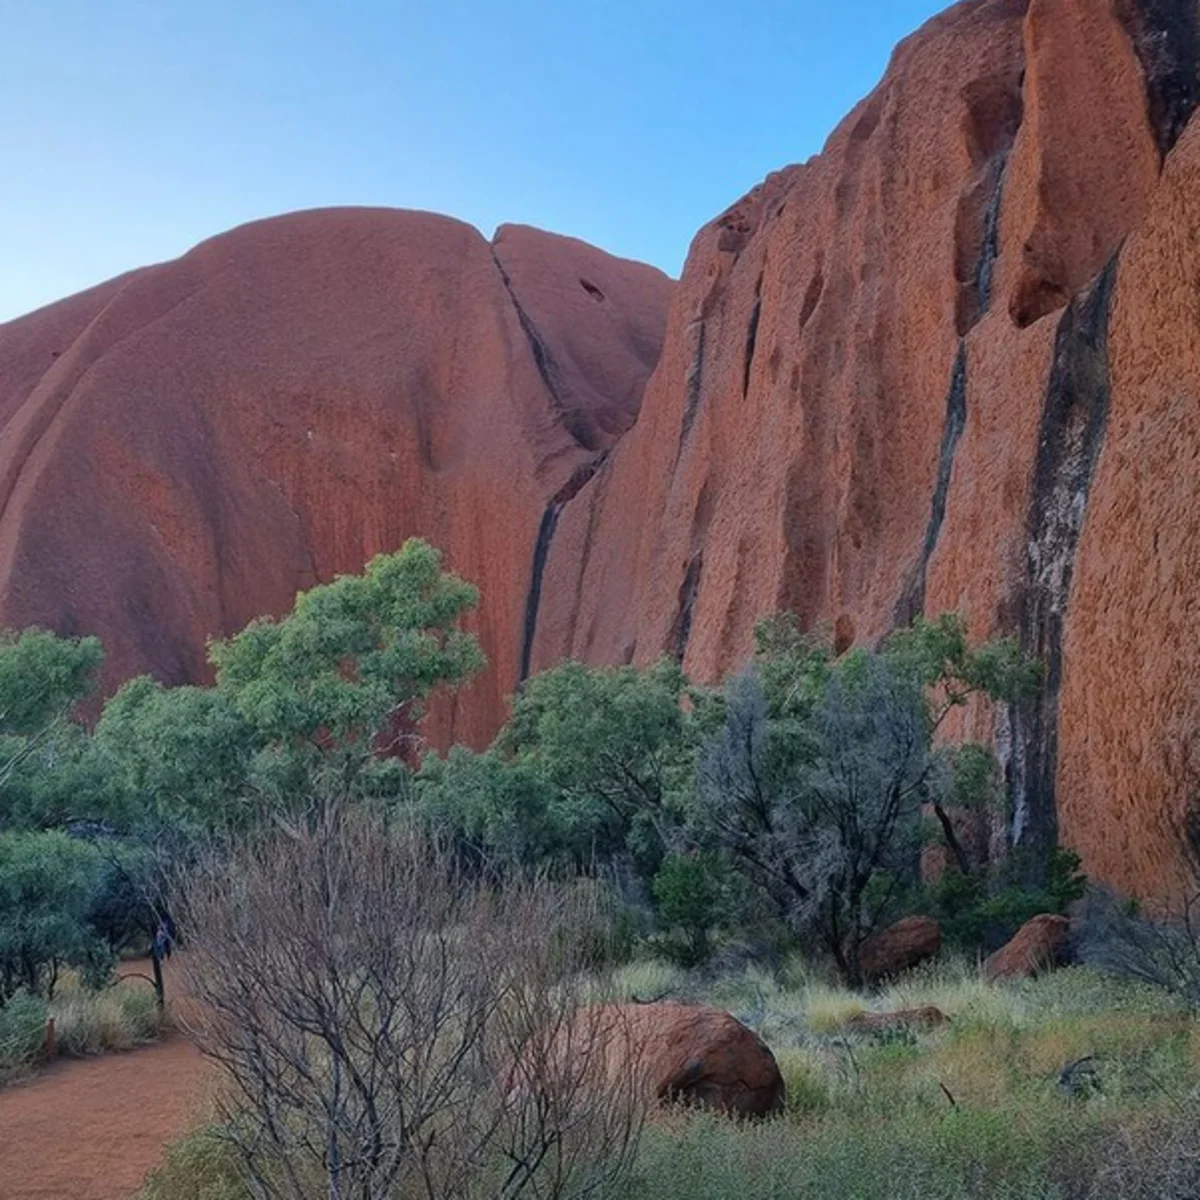 Alice Springs to Uluru tour